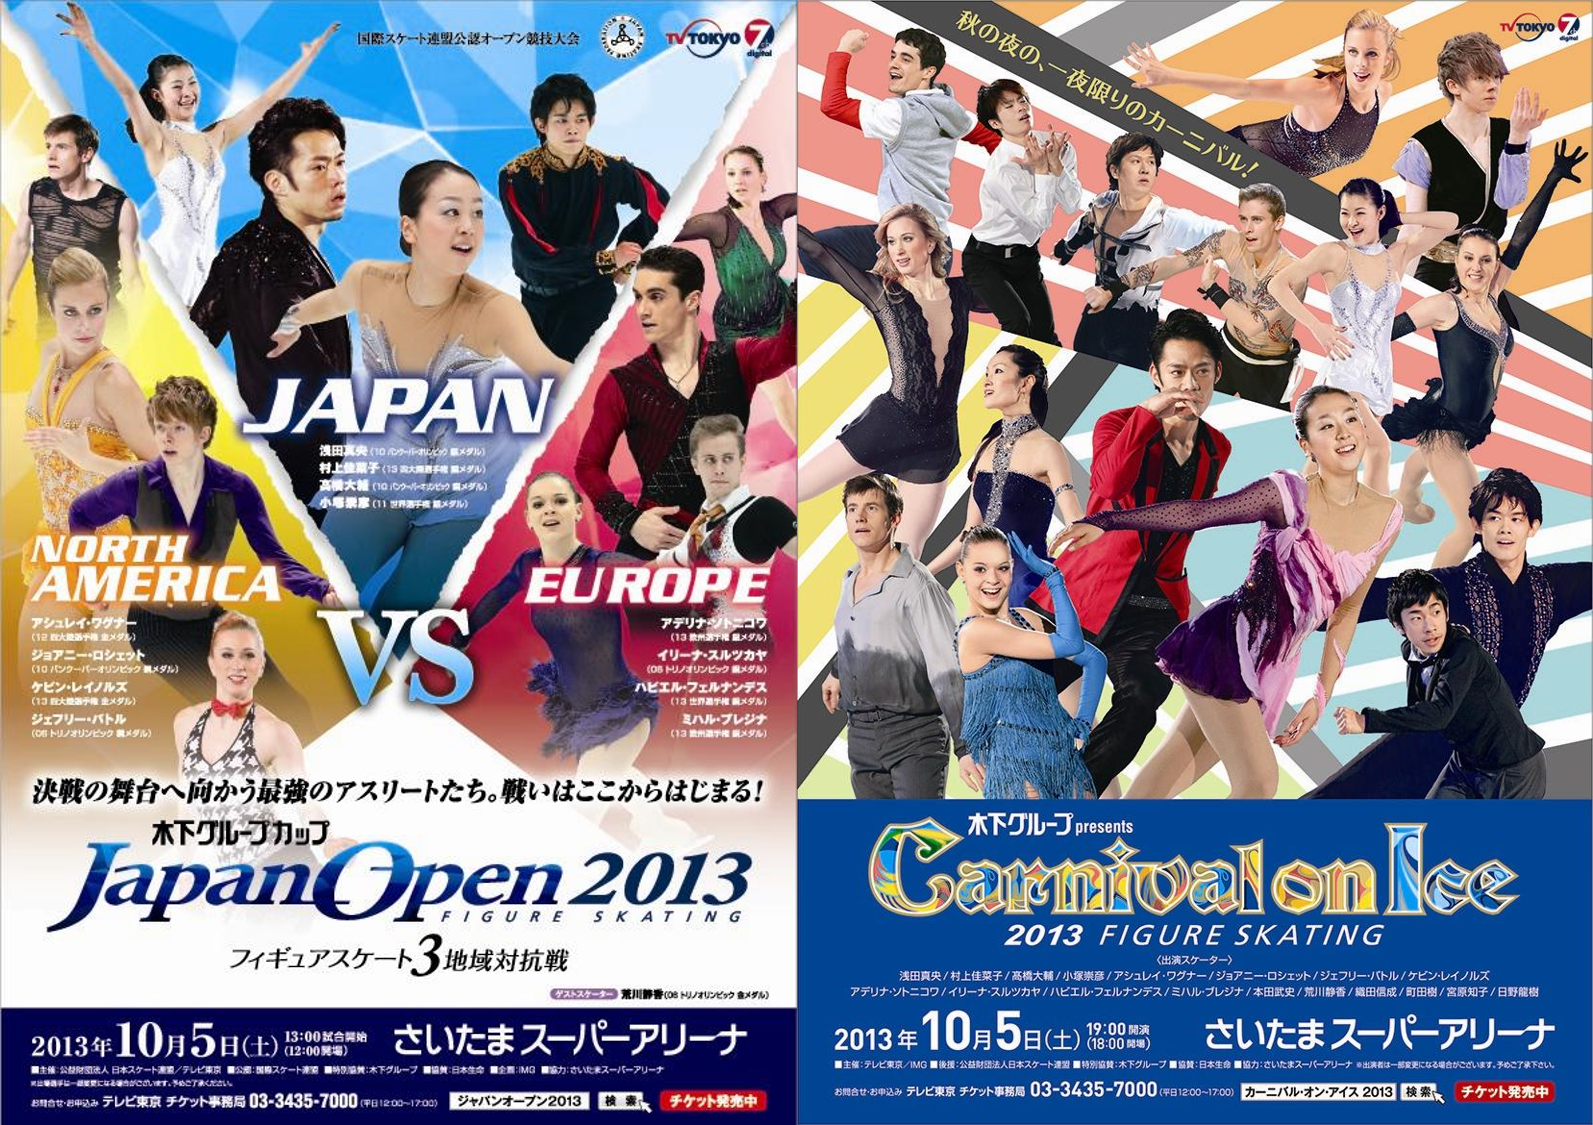 ジャパンオープン カーニバル オン アイス13を開催 Img スポーツ イベント メディア ファッション分野のグローバル リーディングカンパニー